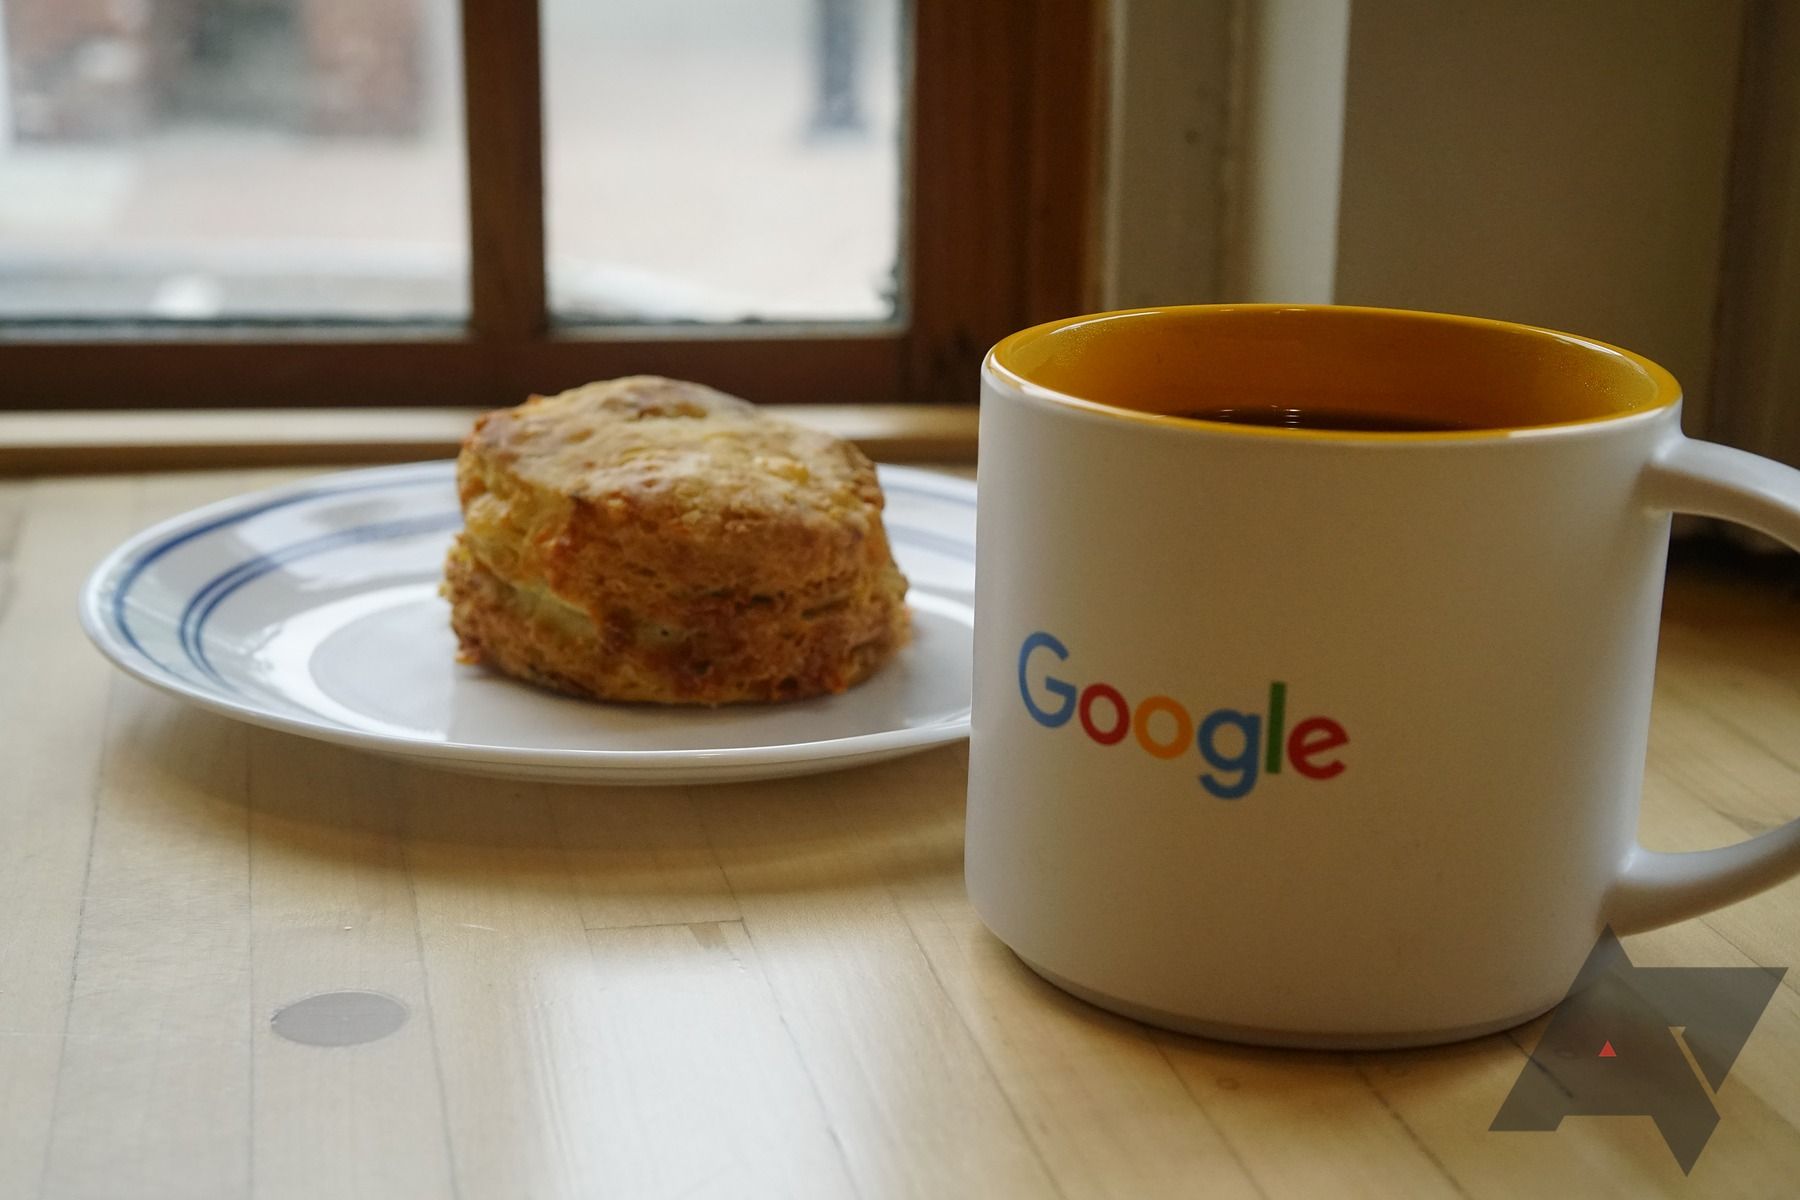 google-coffee-mug-biscuit-breakfast